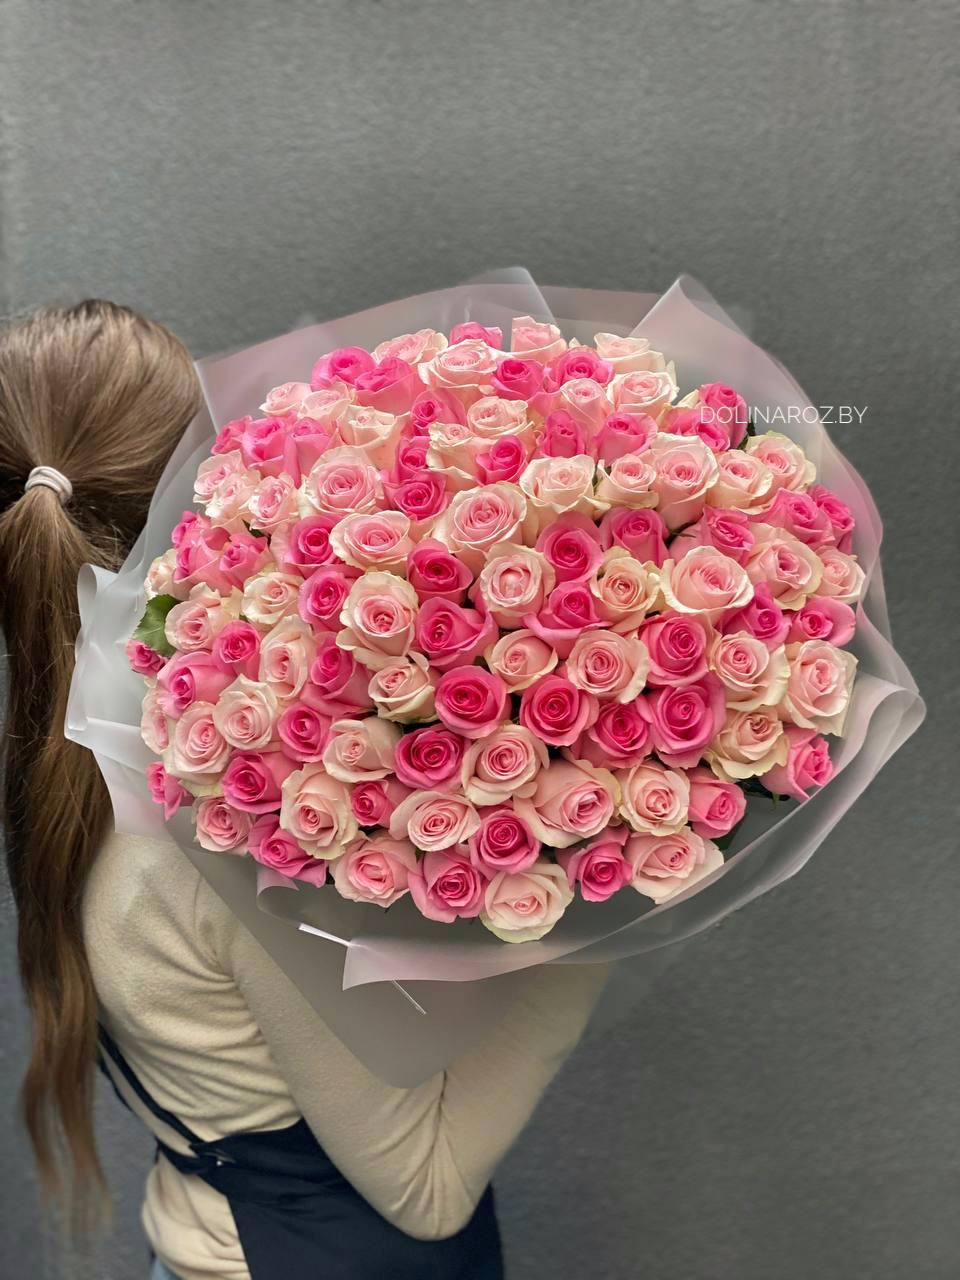 Bouquet of roses "Valegio"